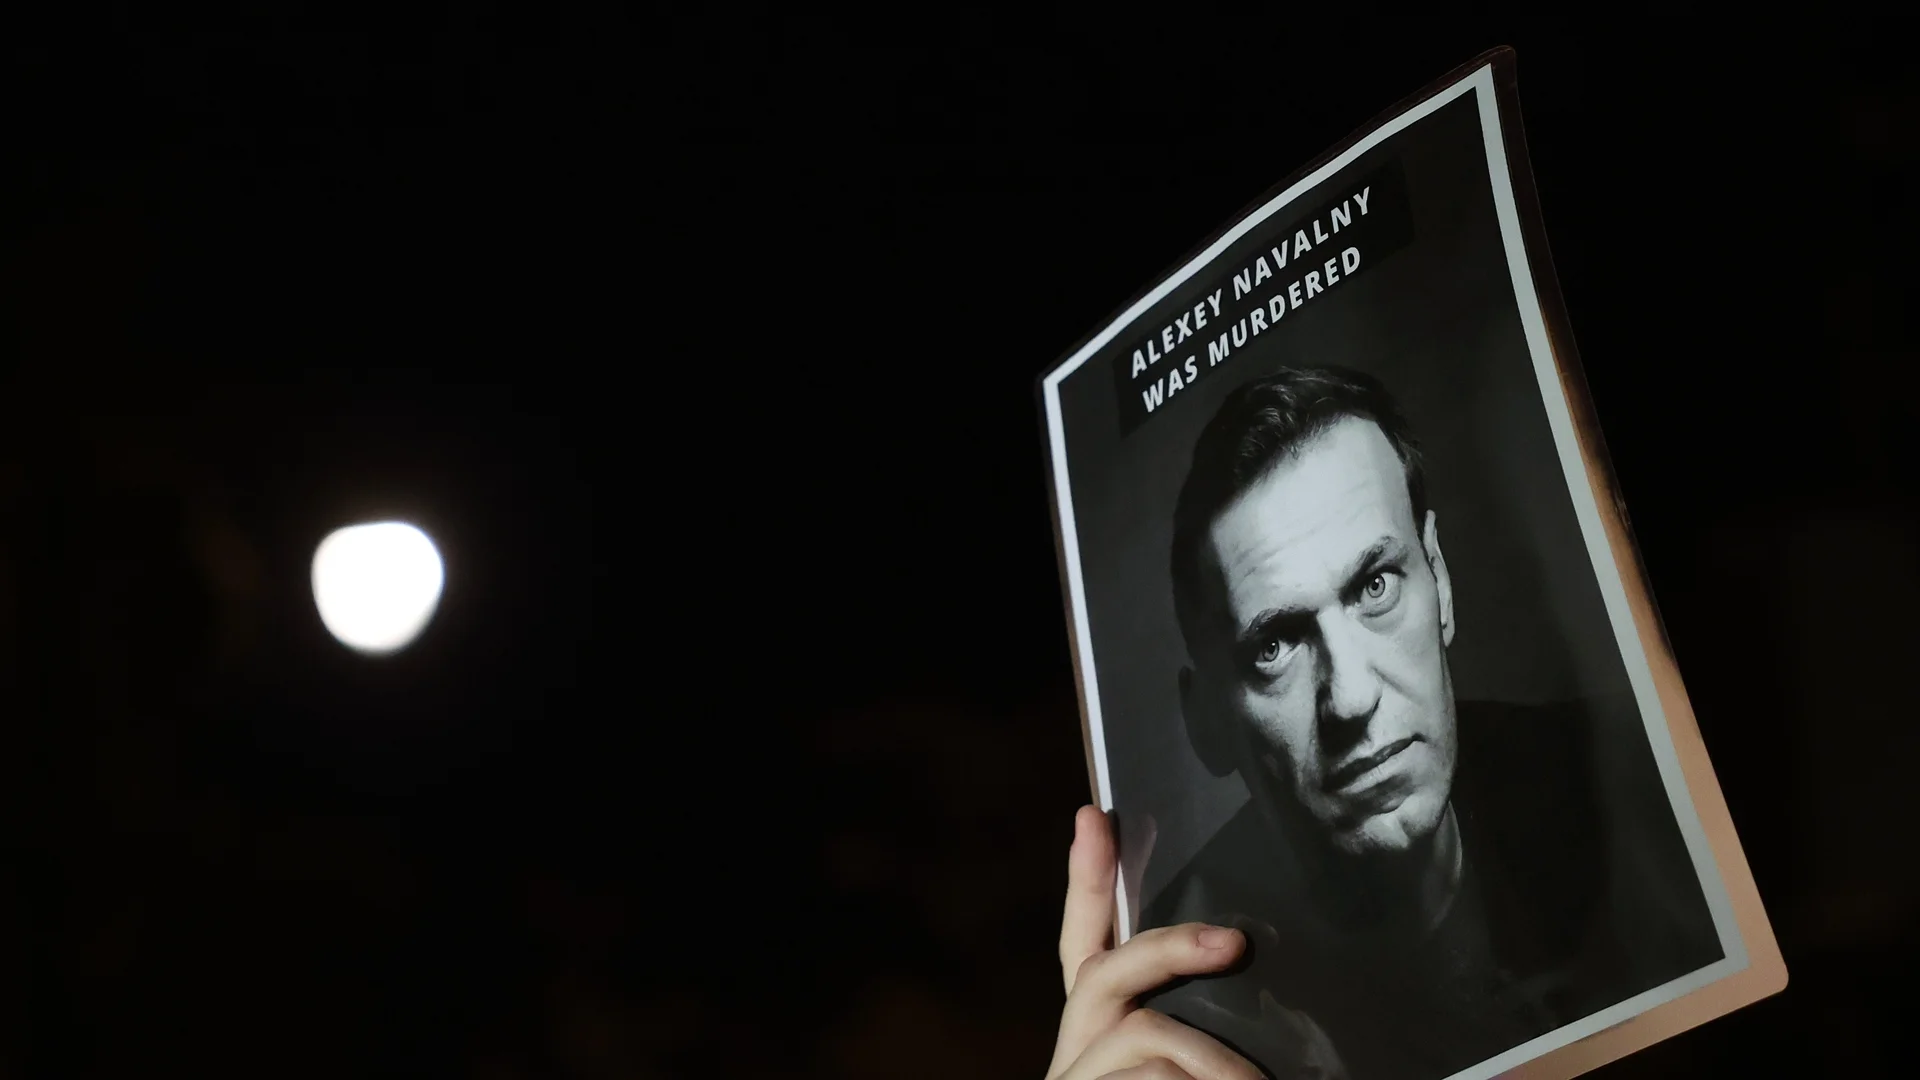 Факелно шествие за Навални премина в скандал между политиците в Рим (ВИДЕО)